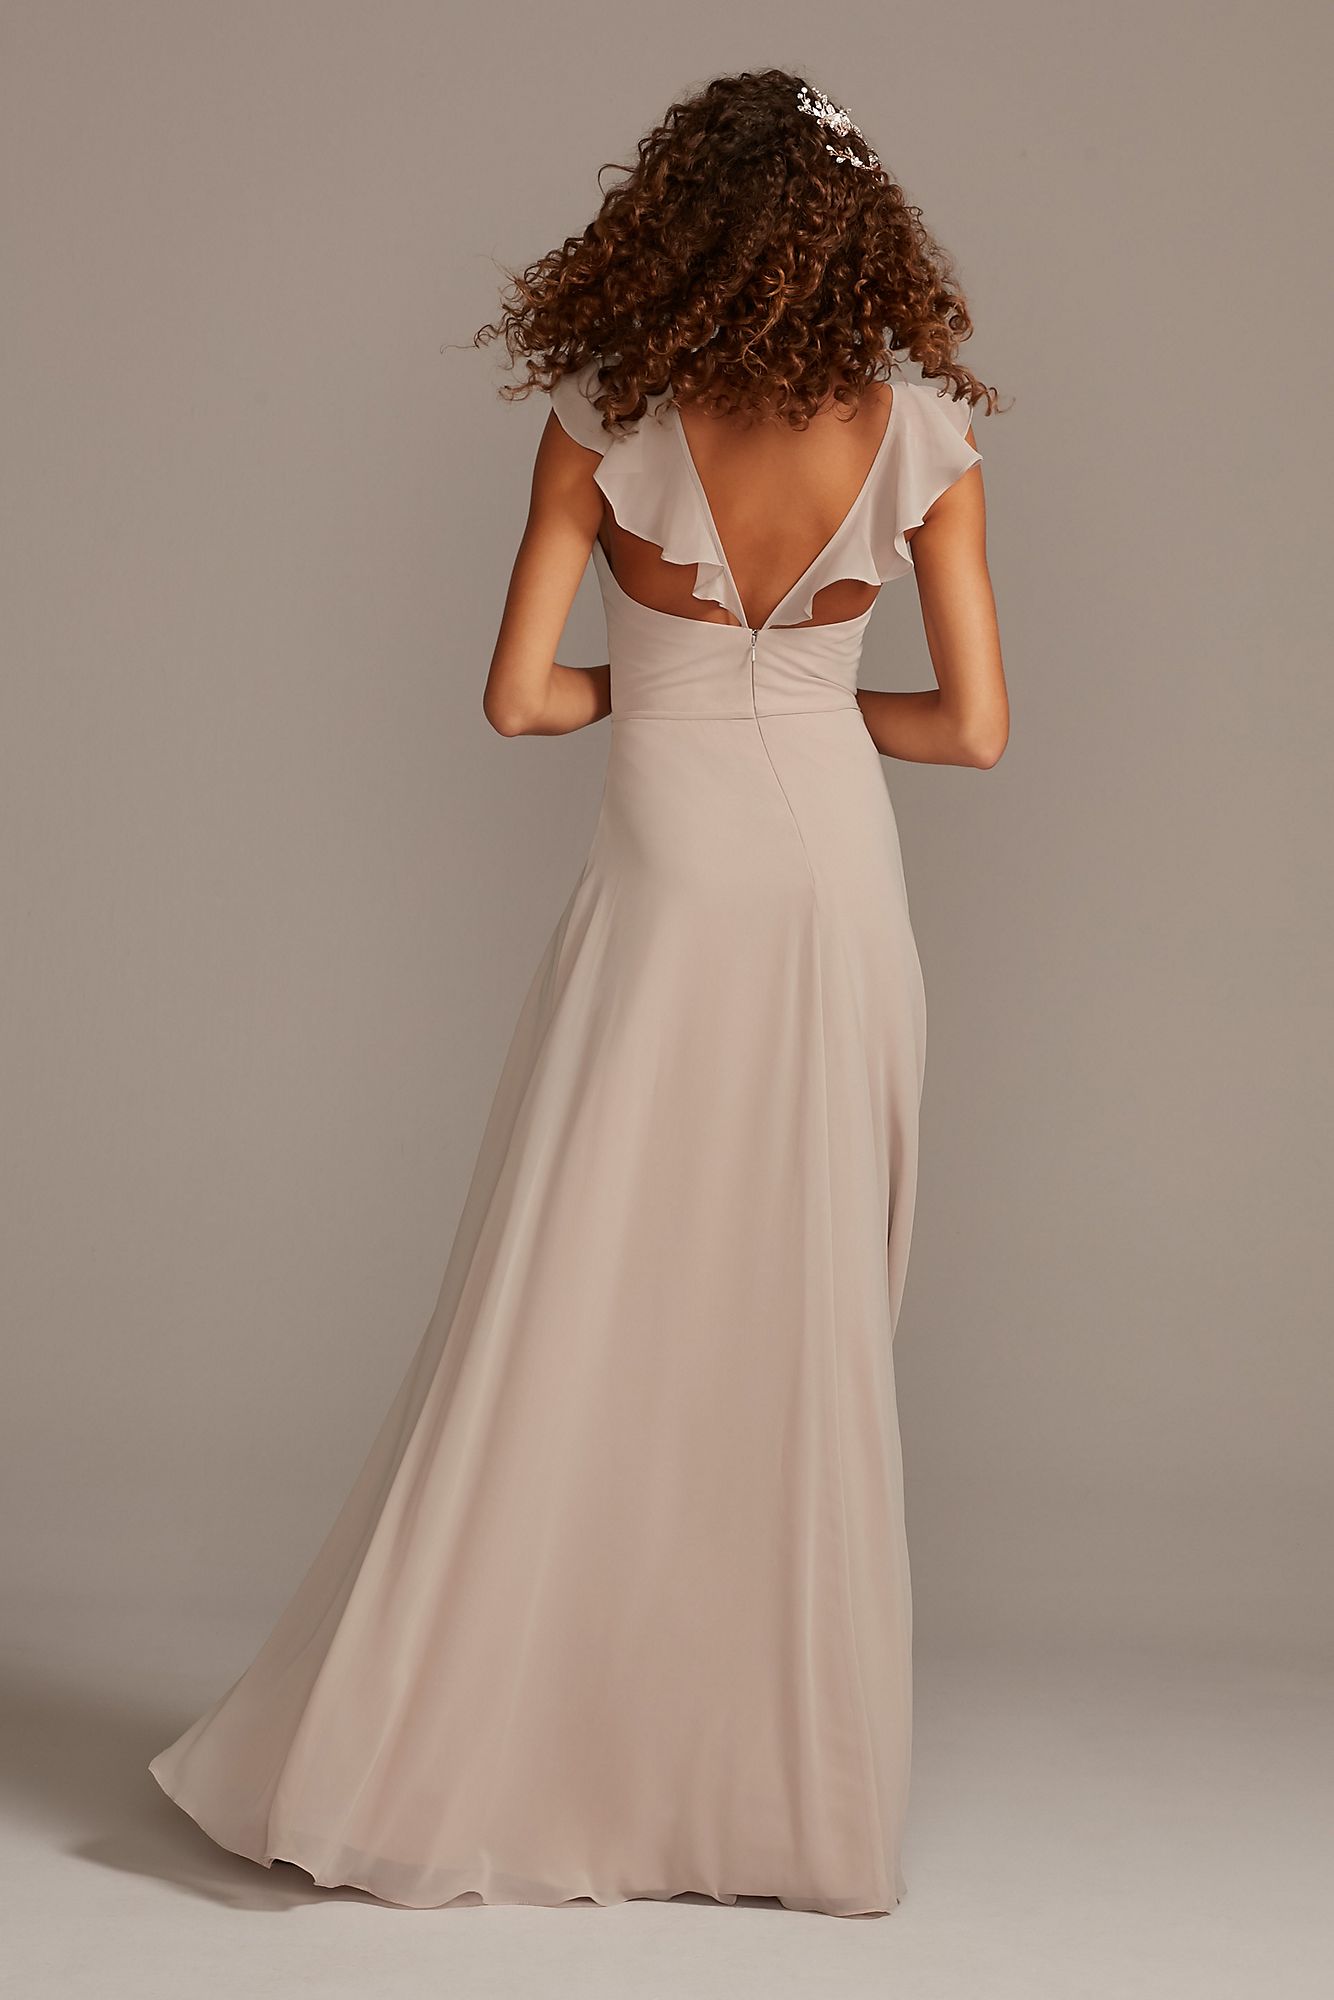 Spaghetti Strap Long Chiffon Bridesmaid Dress with Ruffles Style W11885